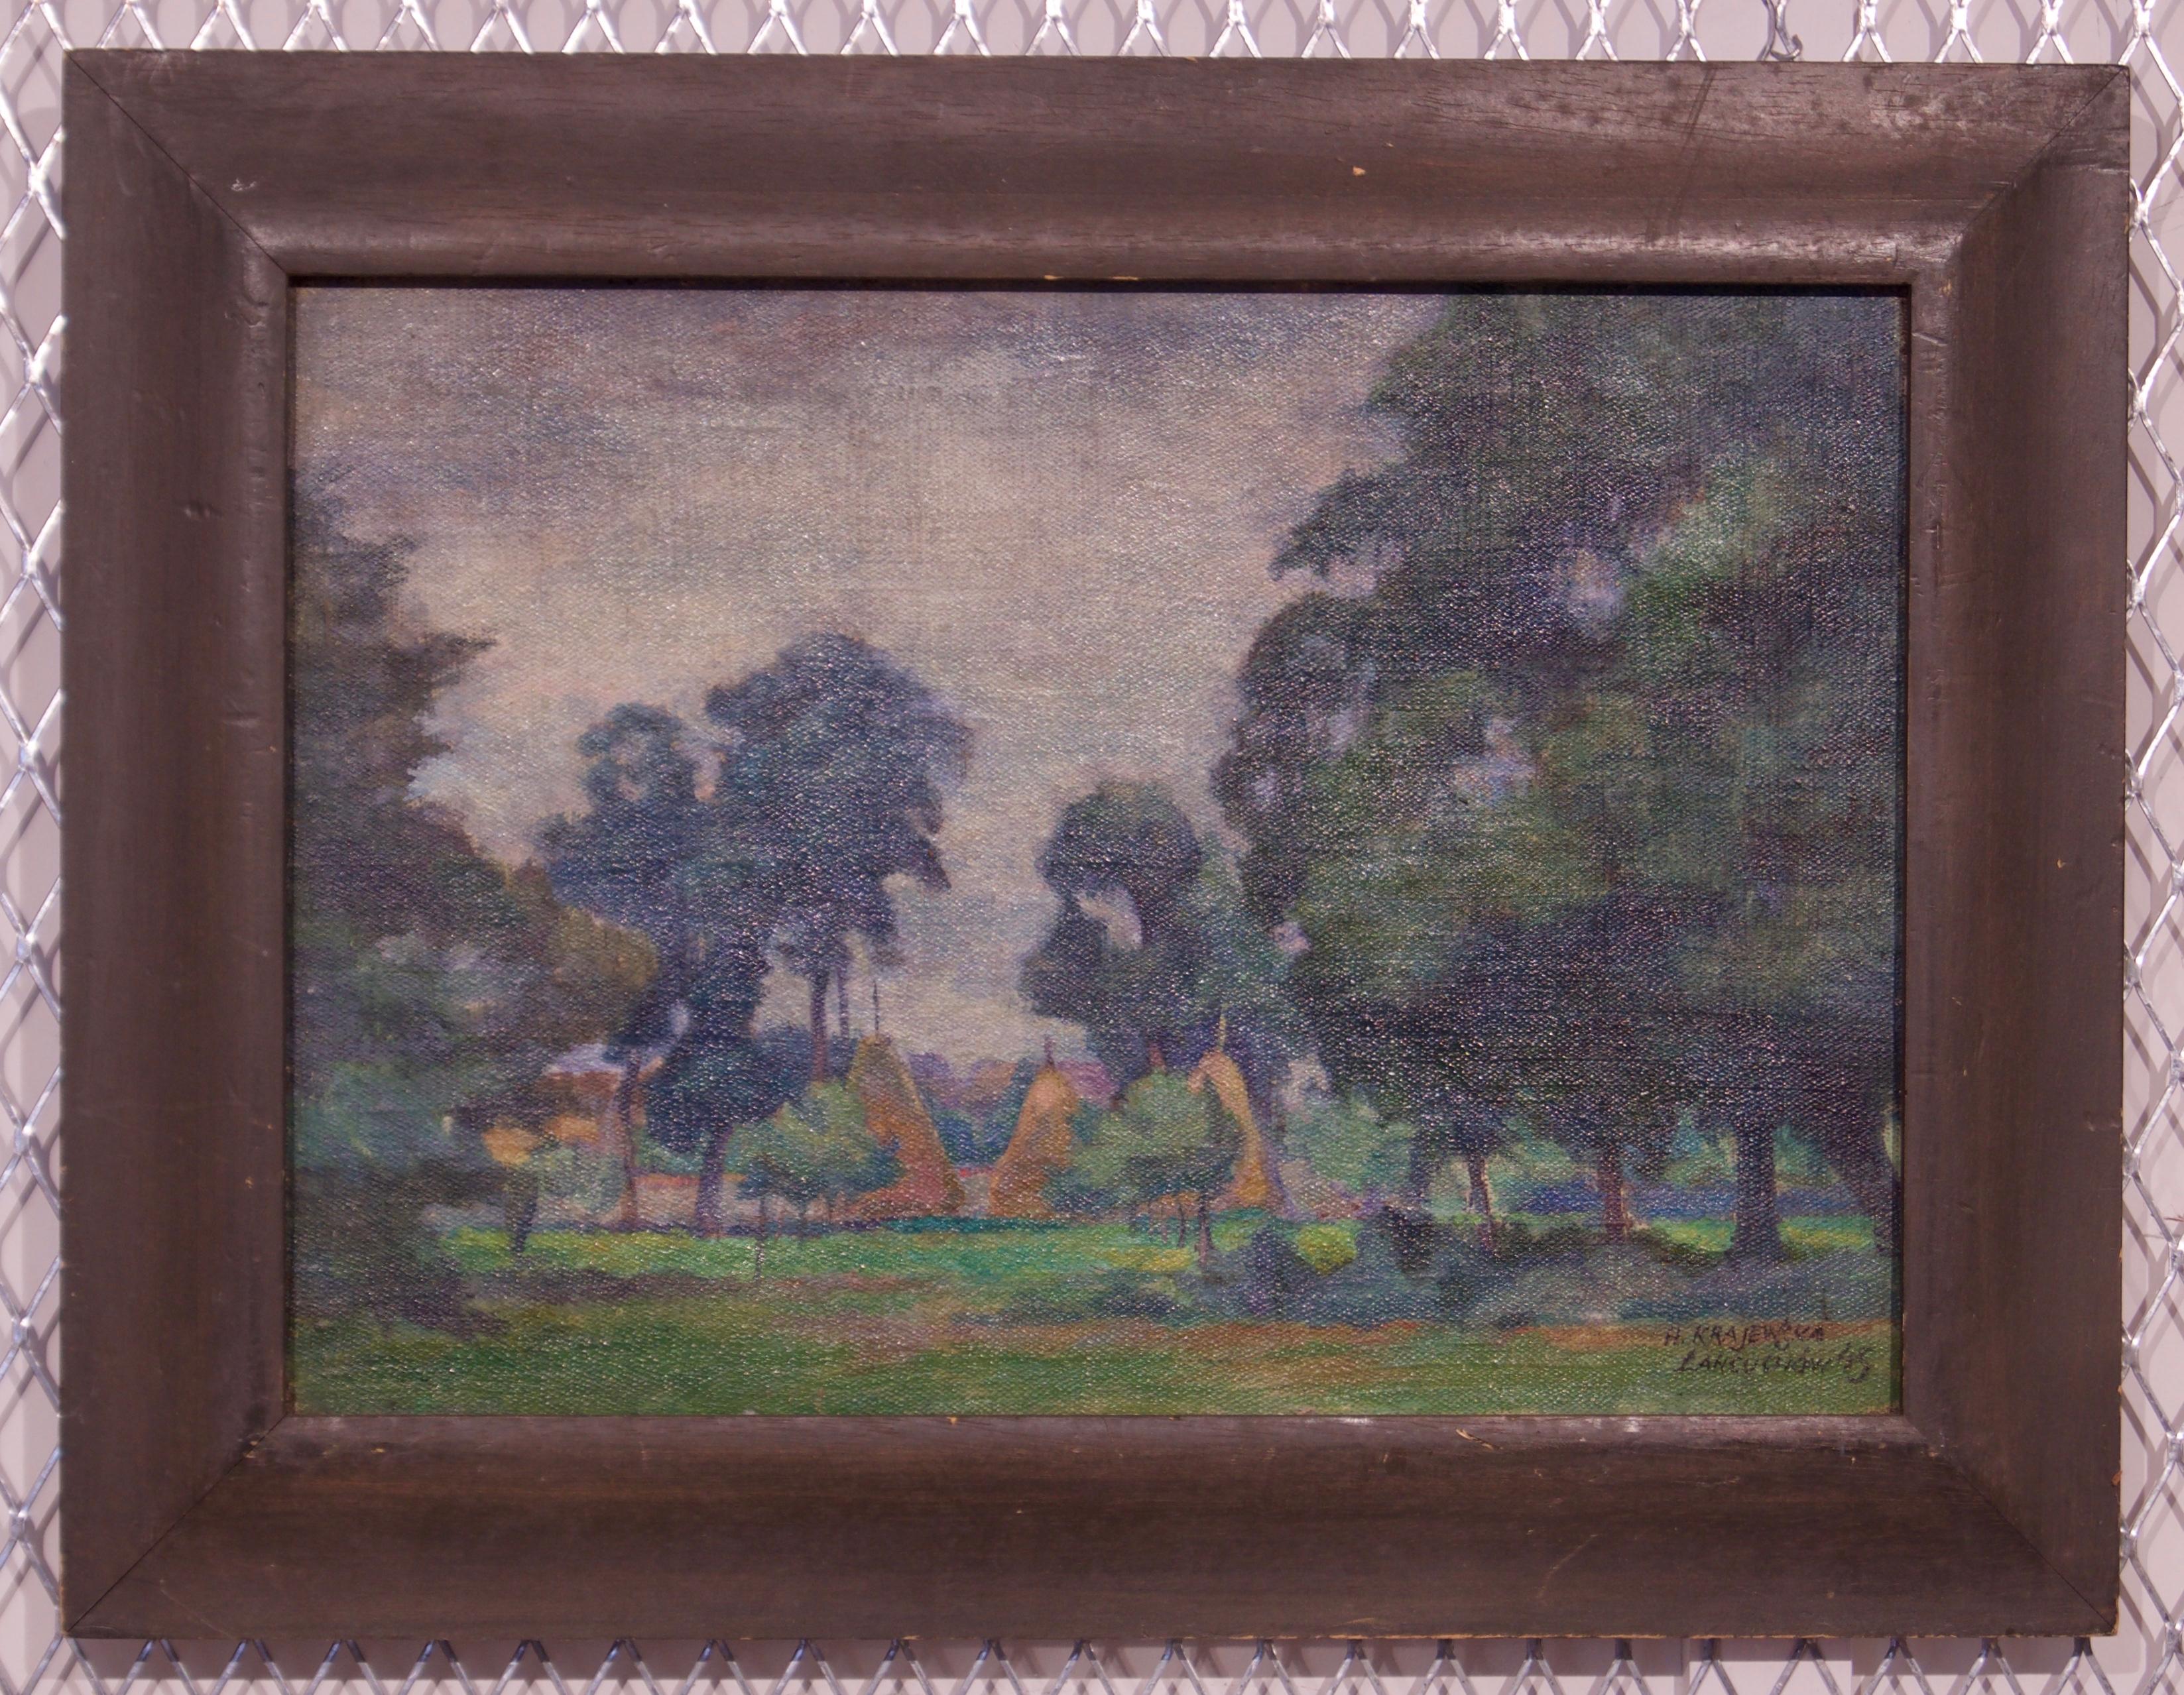 Łańcuchów Village - Mid 20th Century Oil Landscape by Helena Krajewska - Poland - Painting by Helena Malarewicz-Krajewska